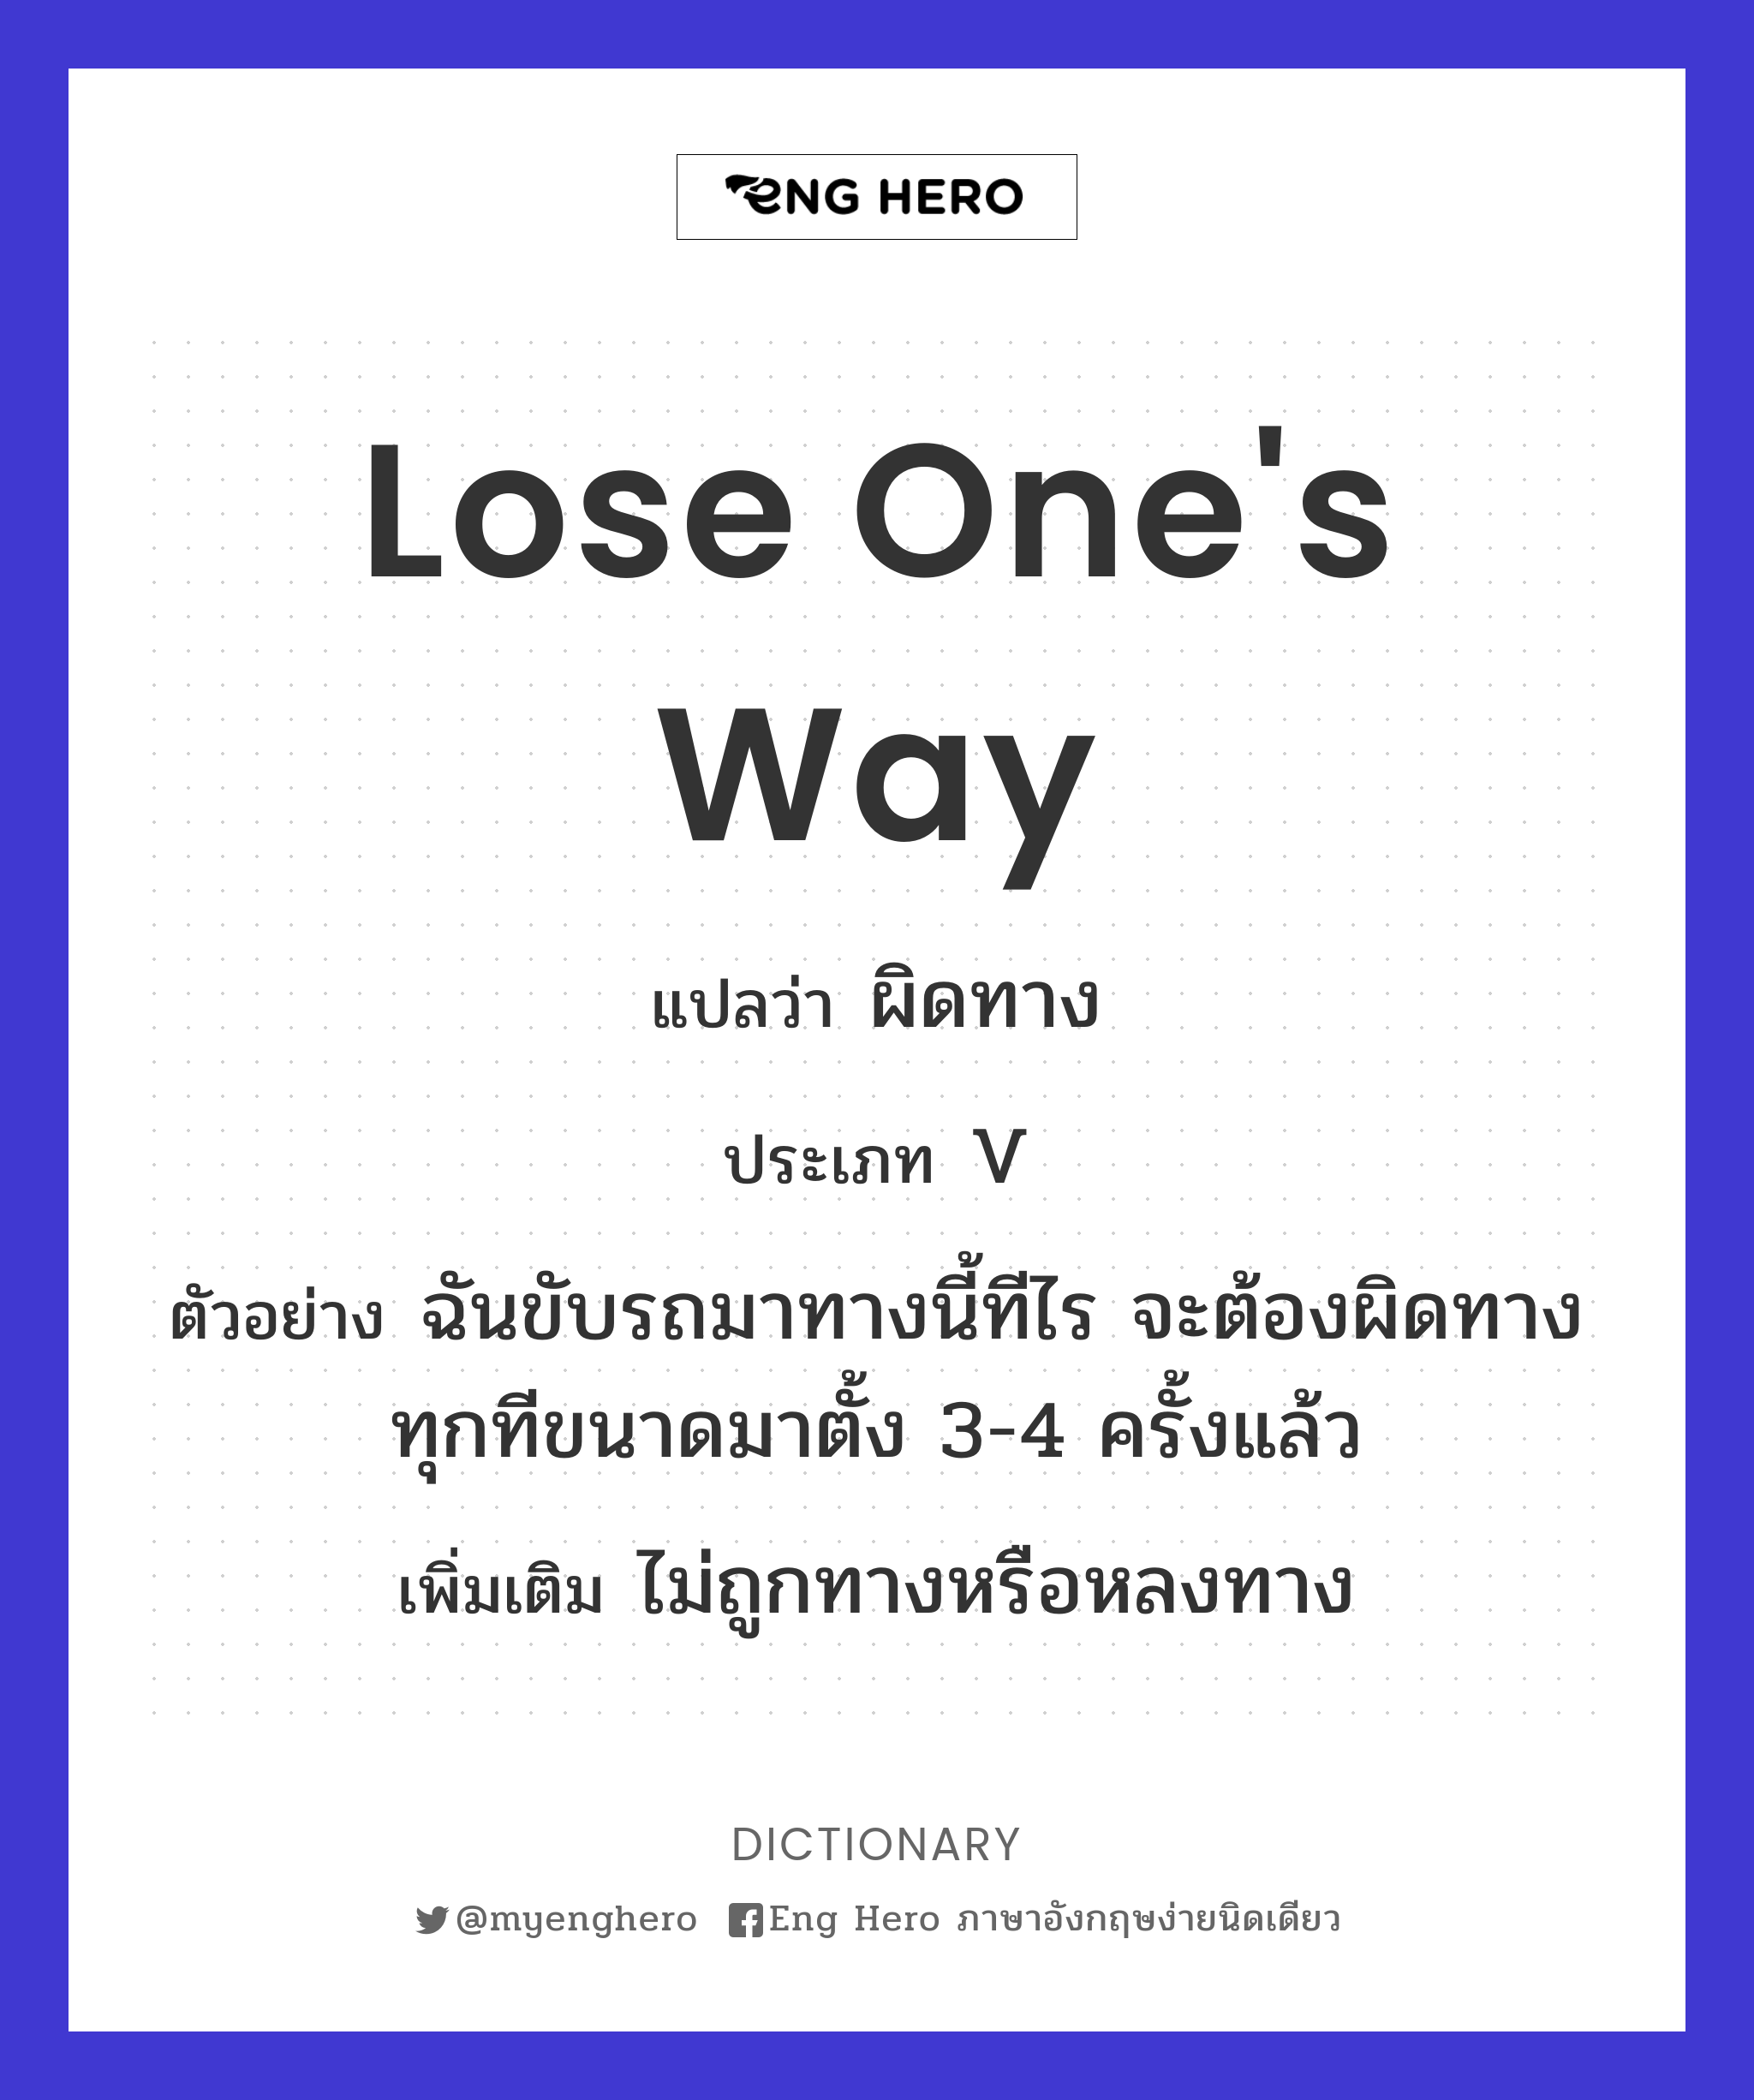 Lose One'S Way แปลว่า ผิดทาง | Eng Hero เรียนภาษาอังกฤษ ออนไลน์ ฟรี